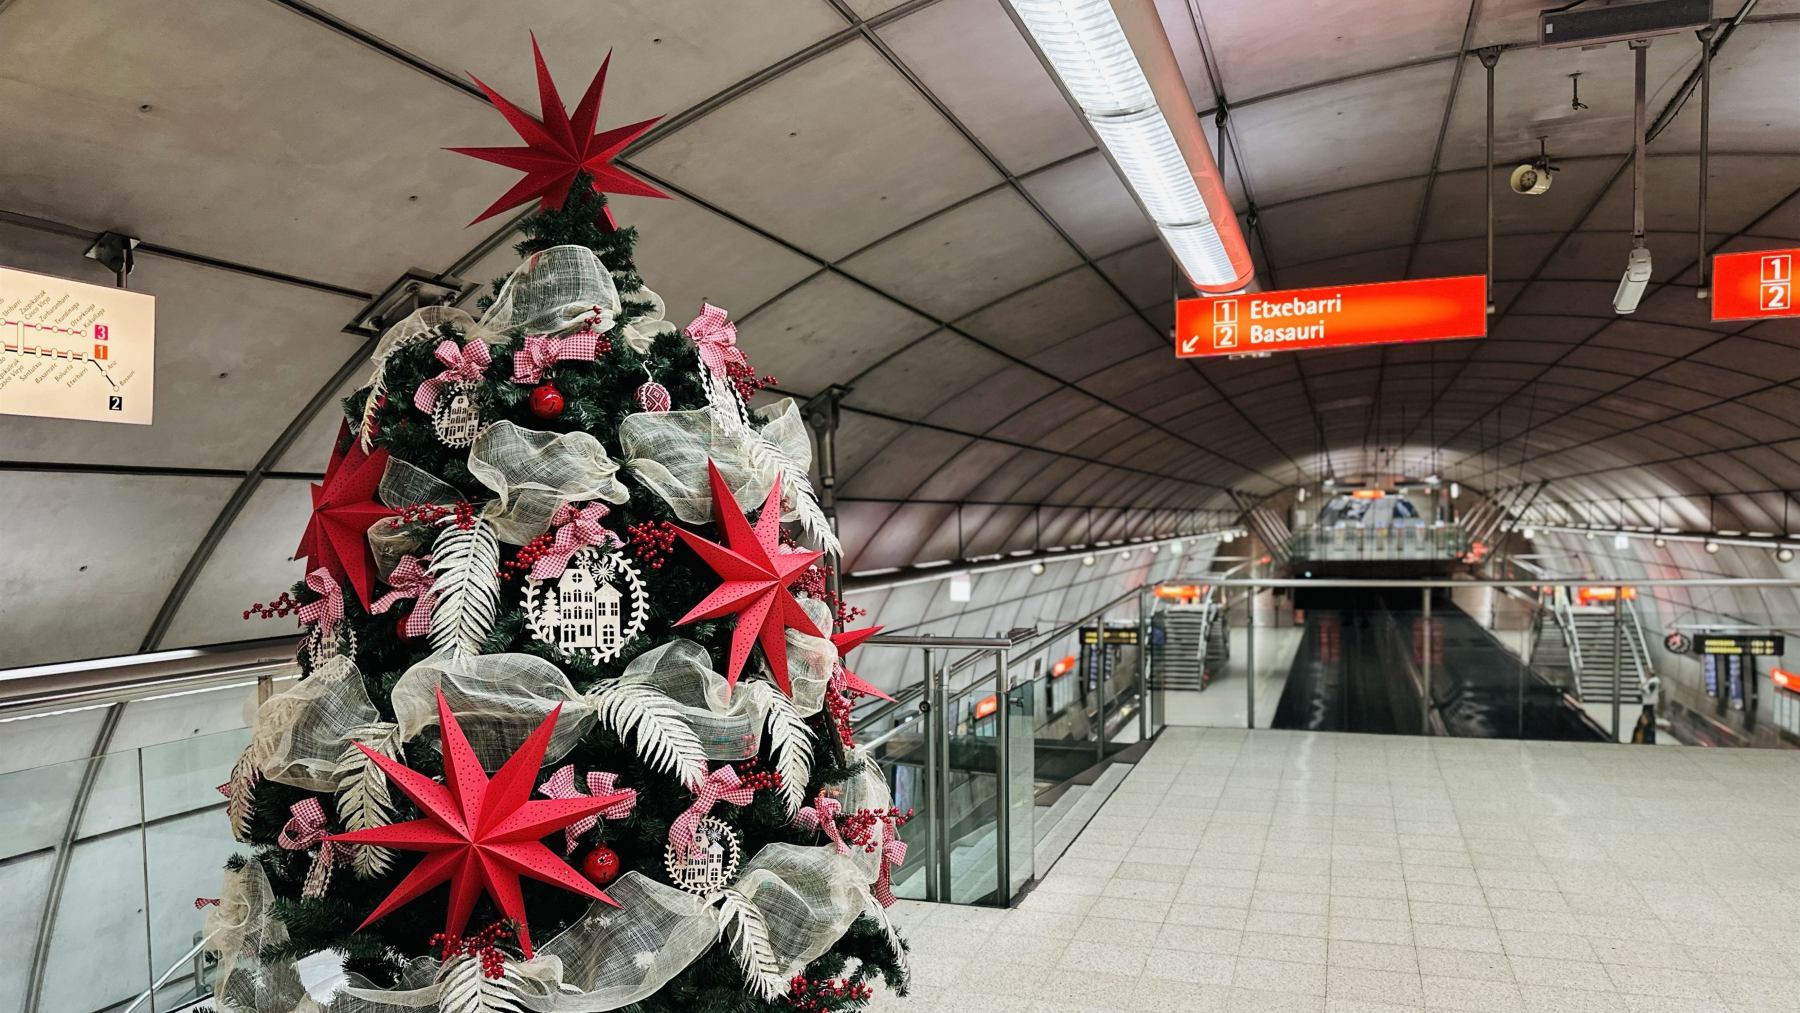 Horario del Metro de Bilbao en Nochebuena a qué hora abre y cierra